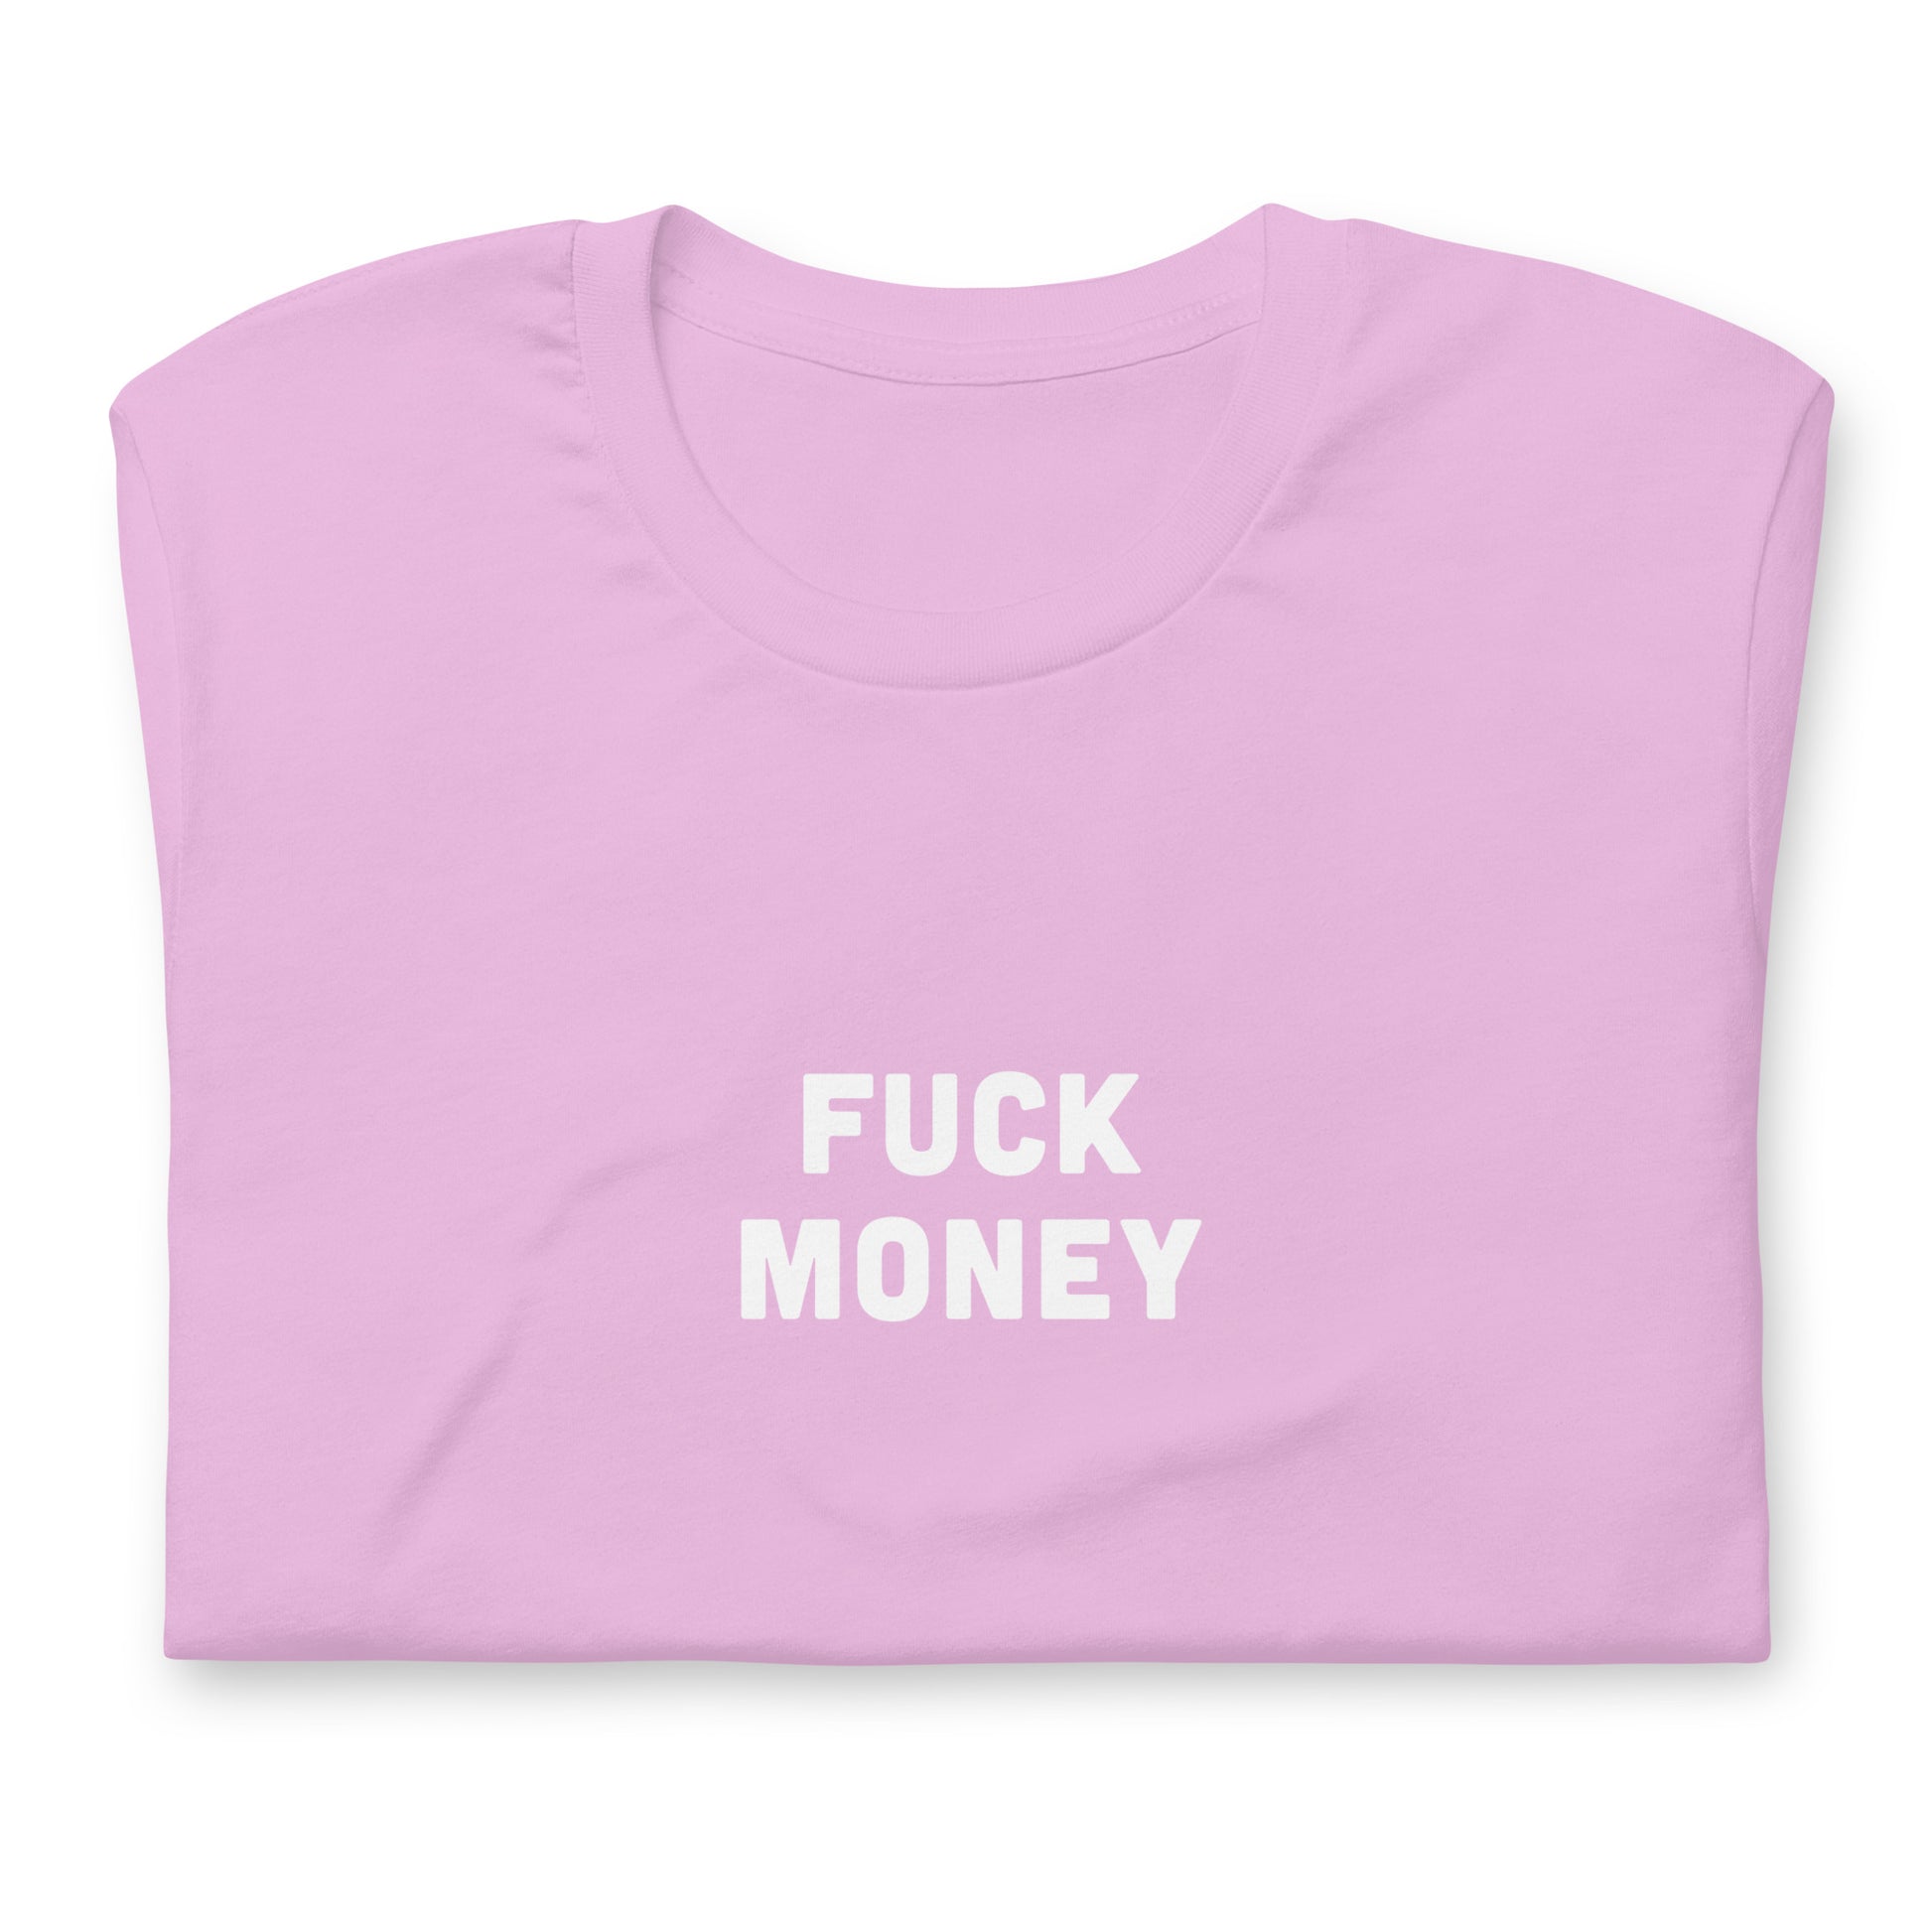 Fuck Money T-Shirt Size 2XL Color Forest